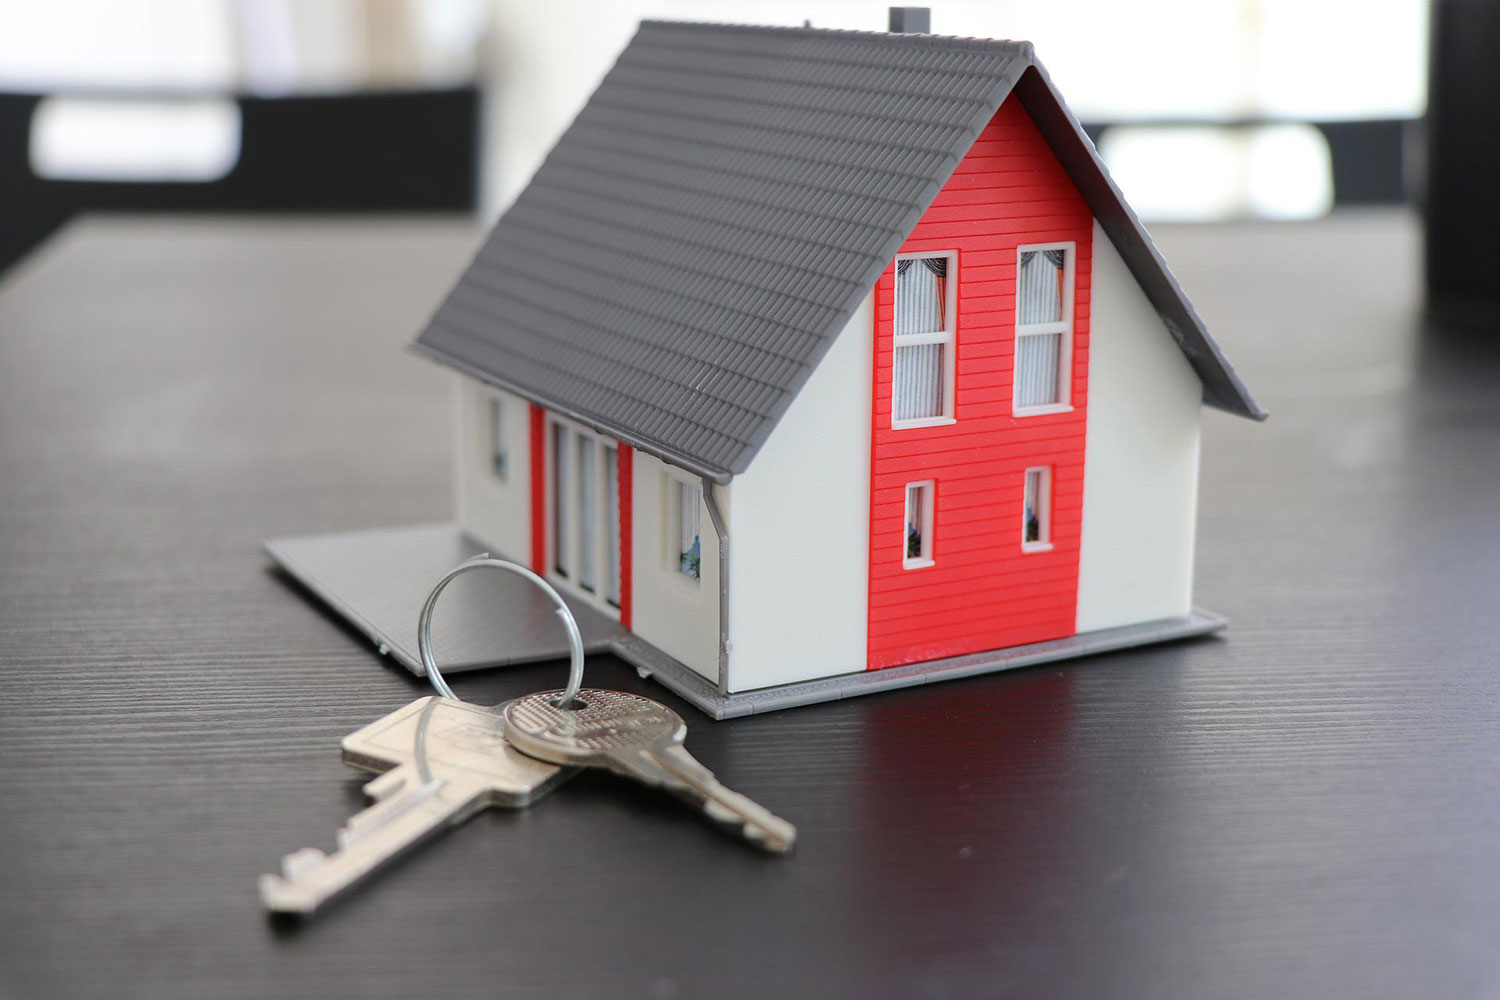 Conclure la vente d'une terre à bois ou l'achat d'une maison se conclut souvent avec la remise de clés